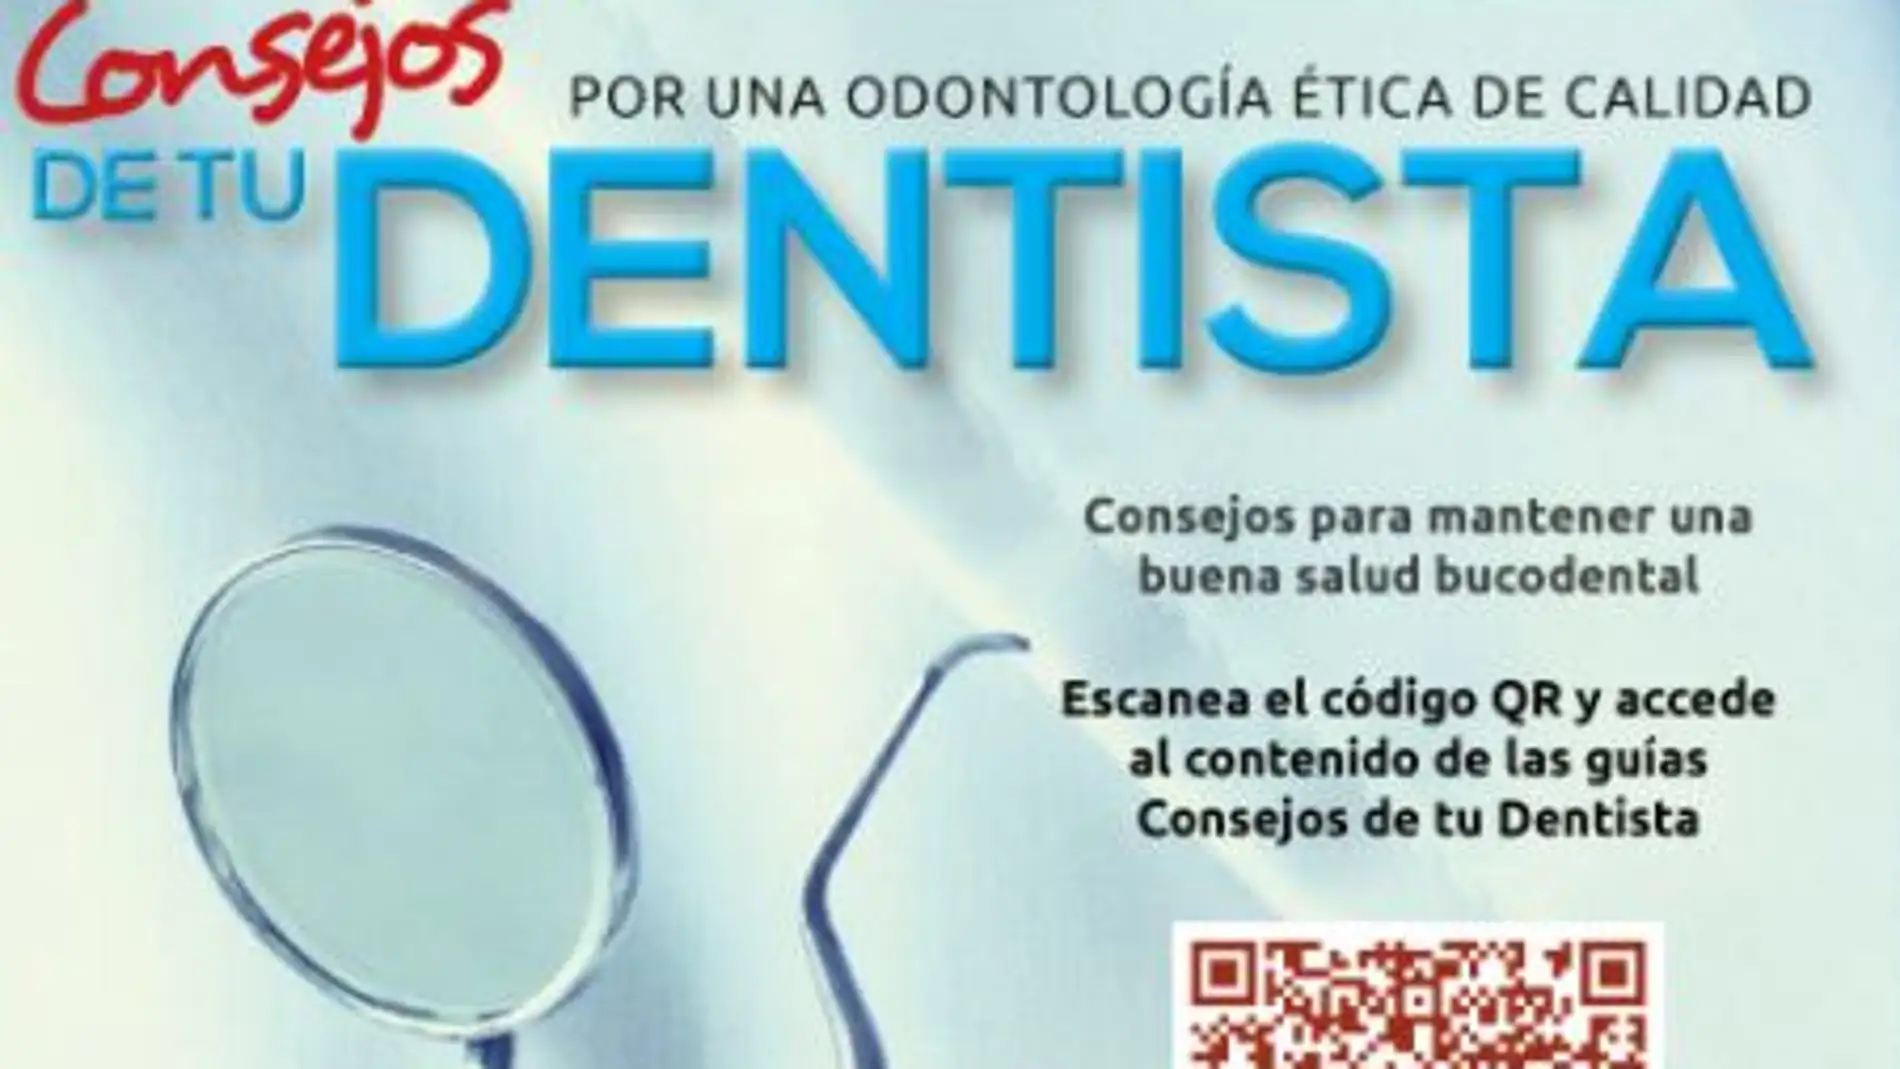 Las guías ‘Consejos de tu Dentista’ estarán disponibles en las clínicas de forma digital